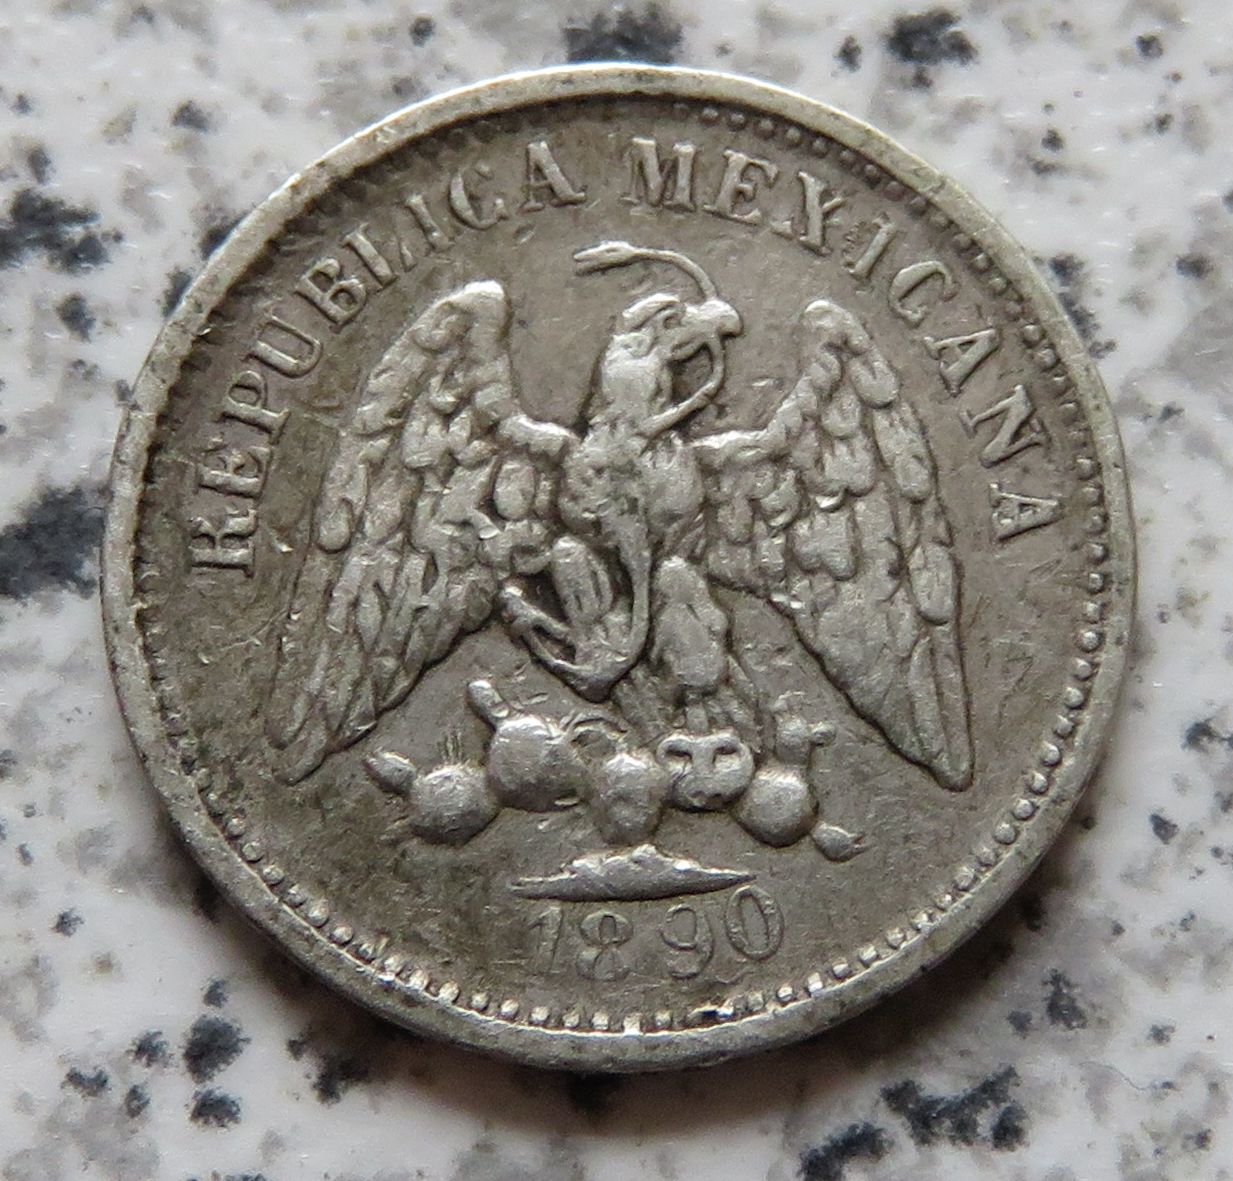  Mexiko 5 Centavos 1890 Mo   